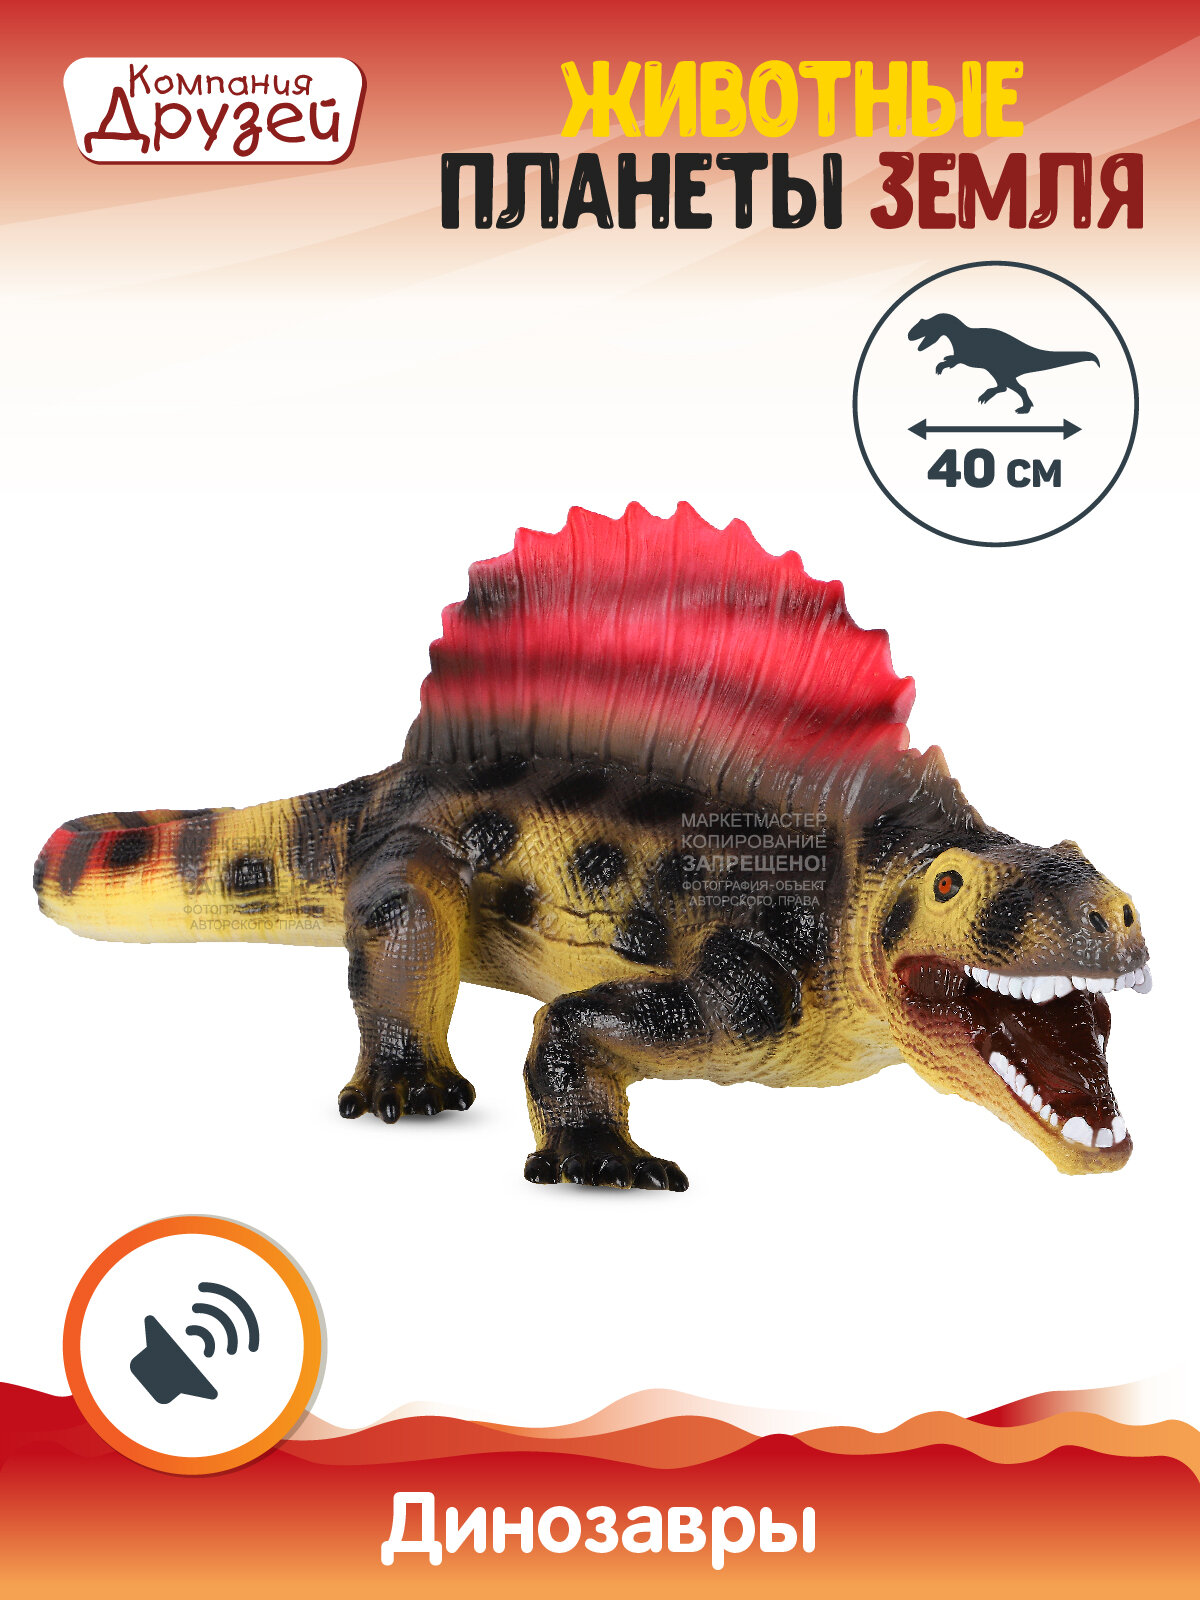 Игрушка для детей Динозавр ТМ компания друзей, серия "Животные планеты Земля", с чипом, звук - рёв животного, эластичный пластик, JB0208317